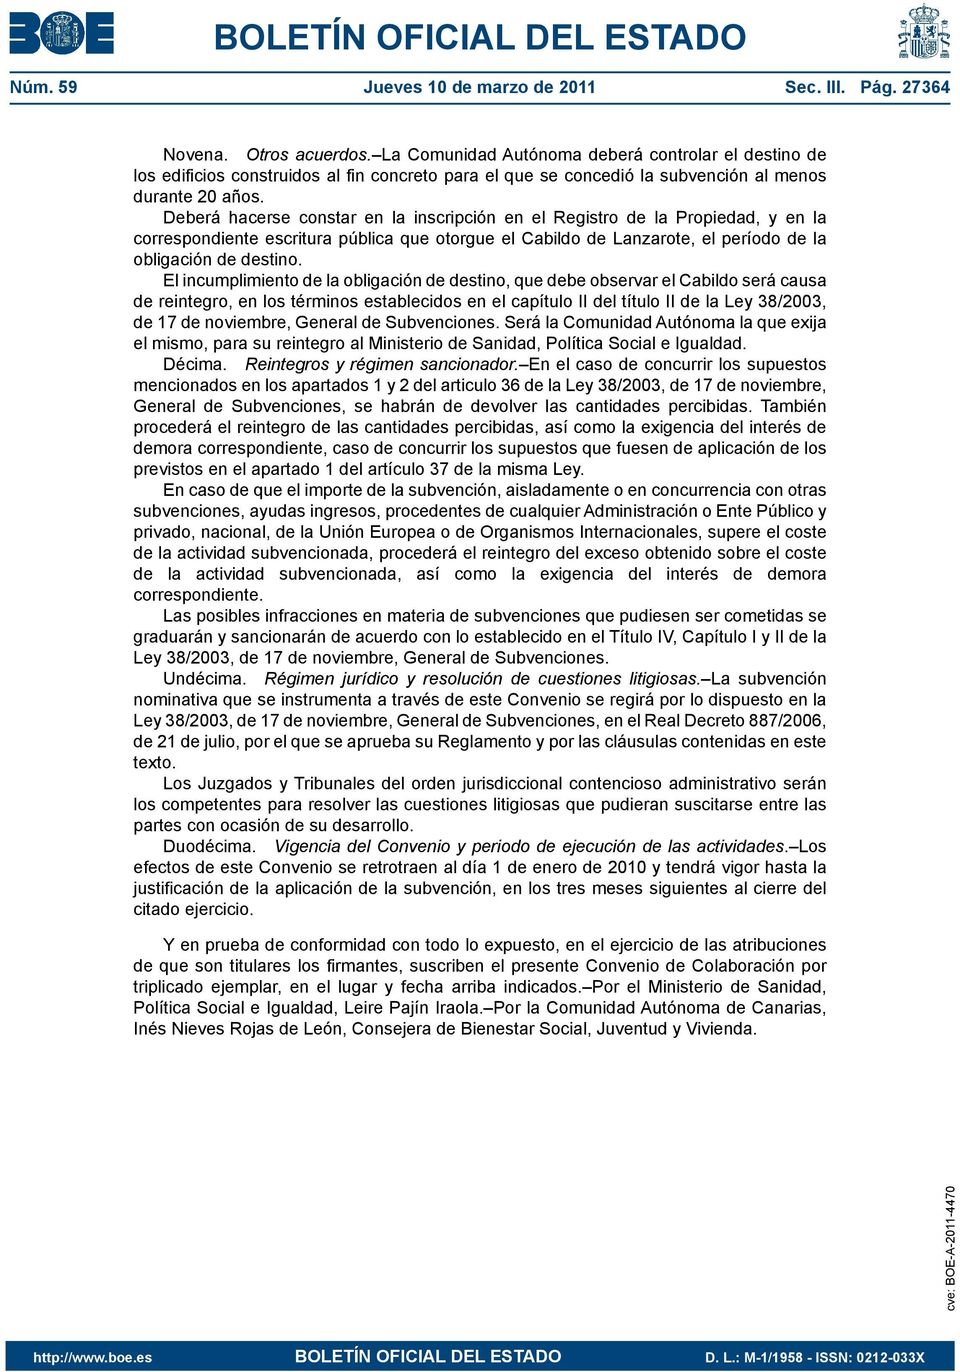 Deberá hacerse constar en la inscripción en el Registro de la Propiedad, y en la correspondiente escritura pública que otorgue el Cabildo de Lanzarote, el período de la obligación de destino.